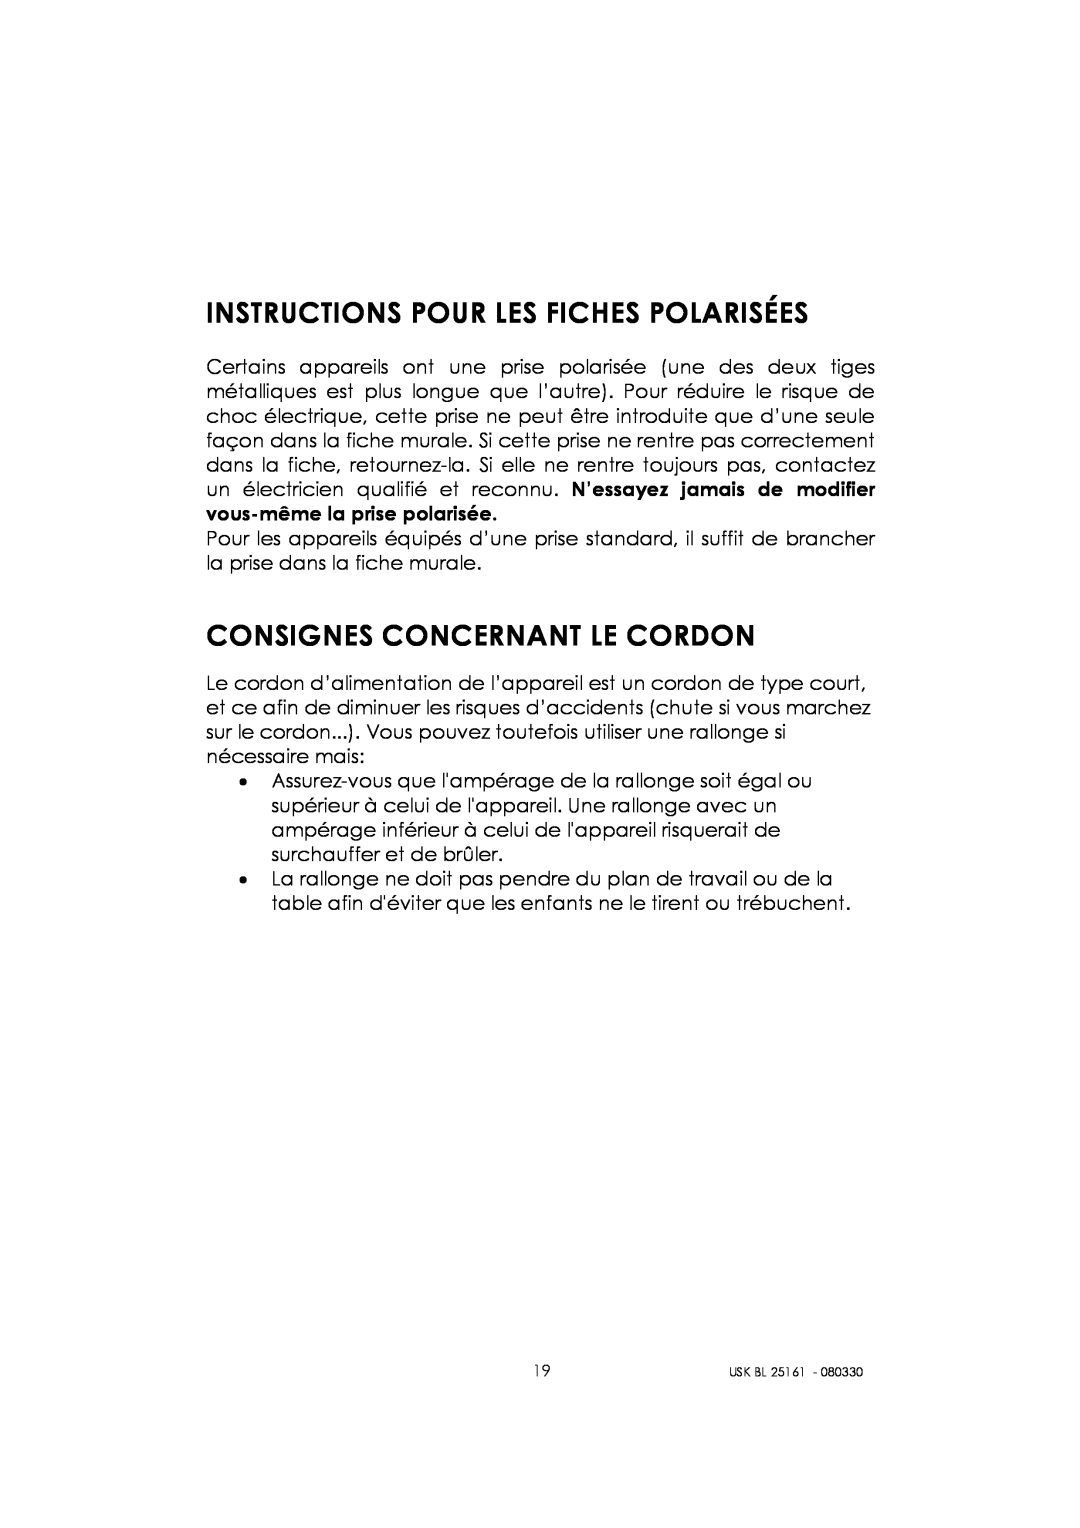 Kalorik usk bl 25161 manual Instructions Pour Les Fiches Polarisées, Consignes Concernant Le Cordon 